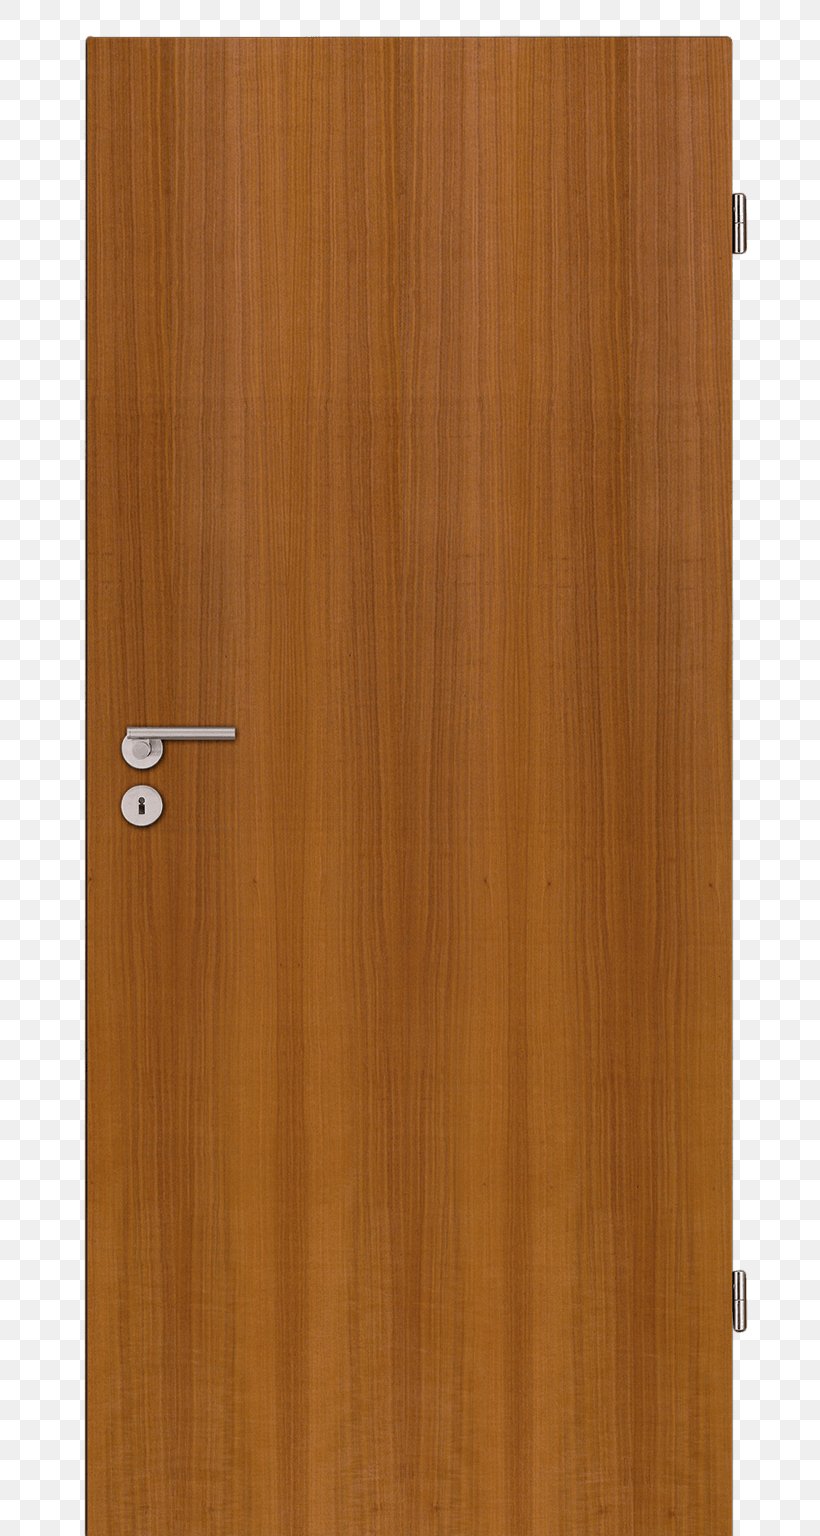 Wood Stain Hardwood Varnish Door, PNG, 720x1536px, Wood Stain, Door, Flooring, Hardwood, Varnish Download Free